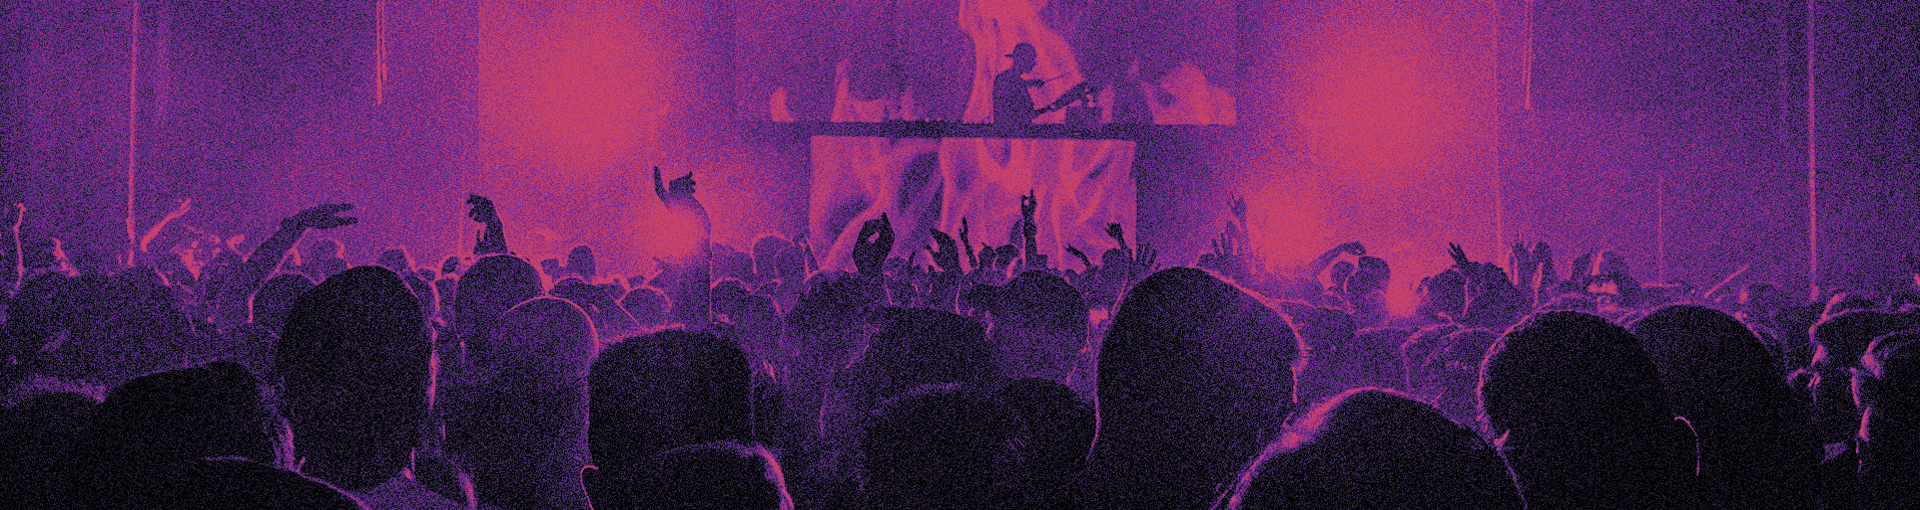 Un spectacle avec la foule et le musicien au fond, ton violet